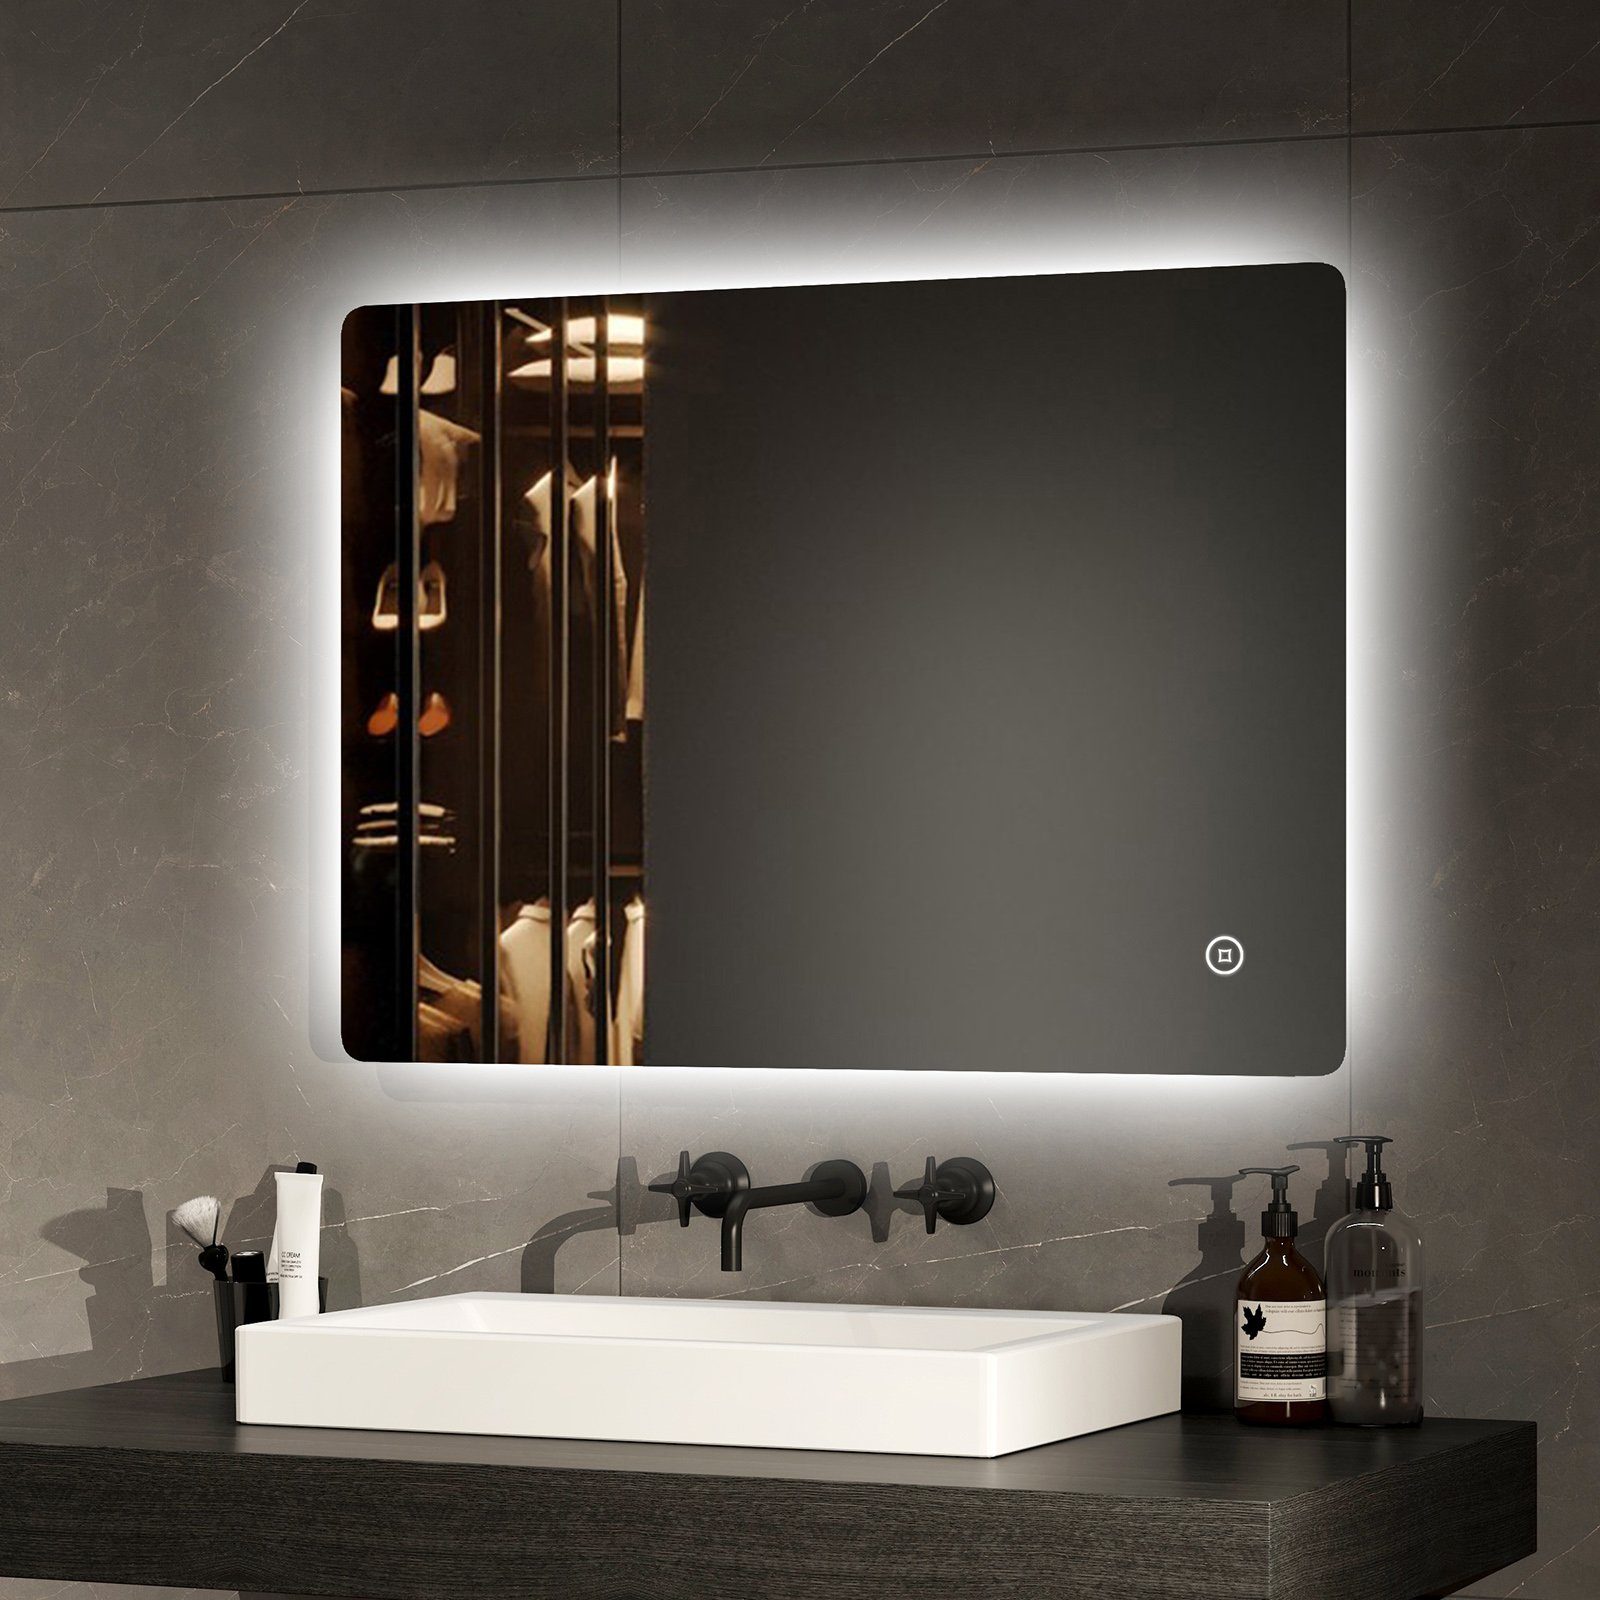 EMKE Badspiegel LED Badezimmerspiegel mit Beleuchtung, mit Touch-schalter Helligkeit Einstellbar und Beschlagfrei